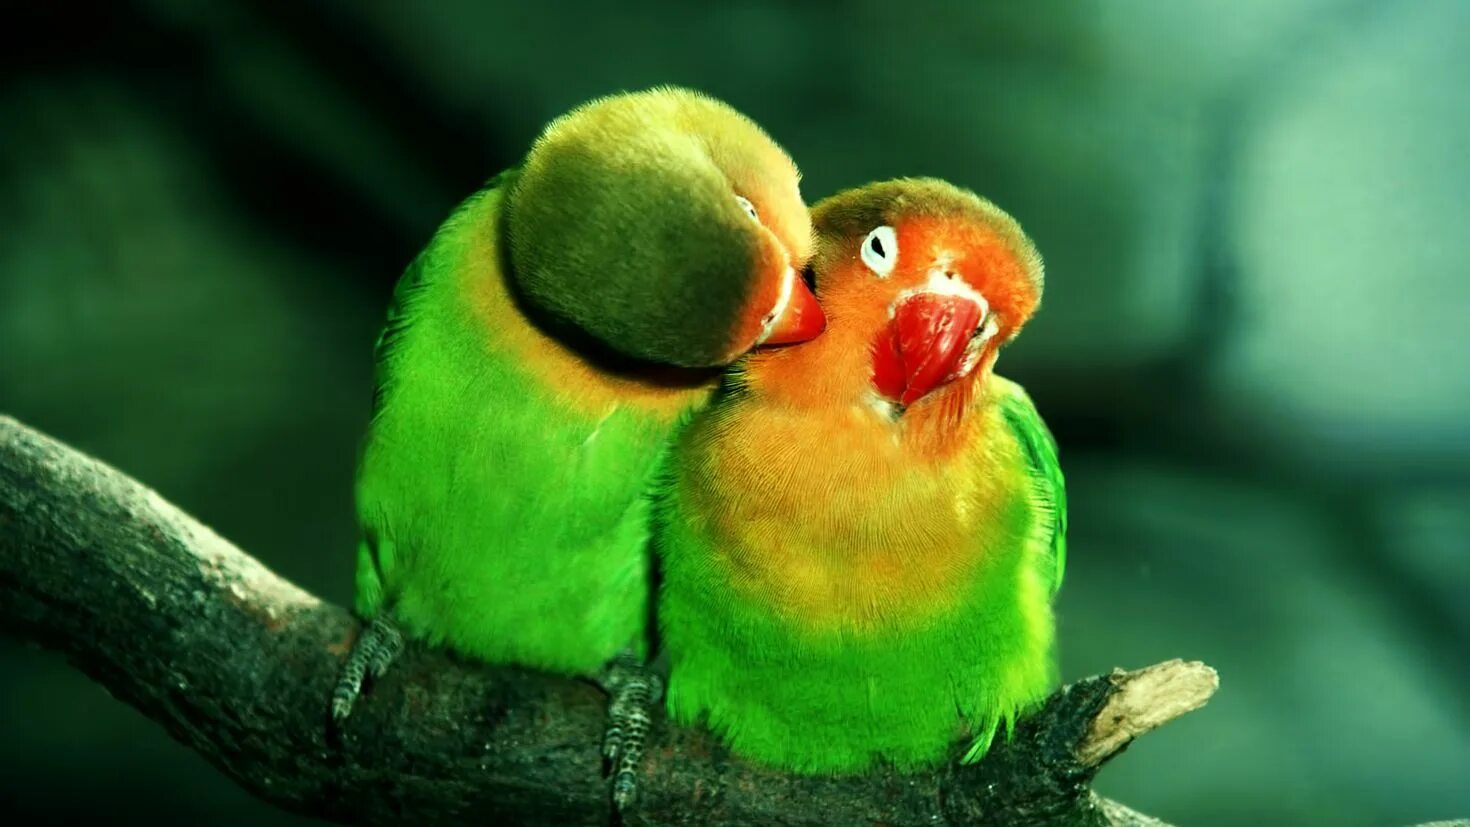 I love birds. Неразлучники попугаи. Попугаи неразлучники Какаду. Неразлучник Фишера. Попугай неразлучник зеленый.